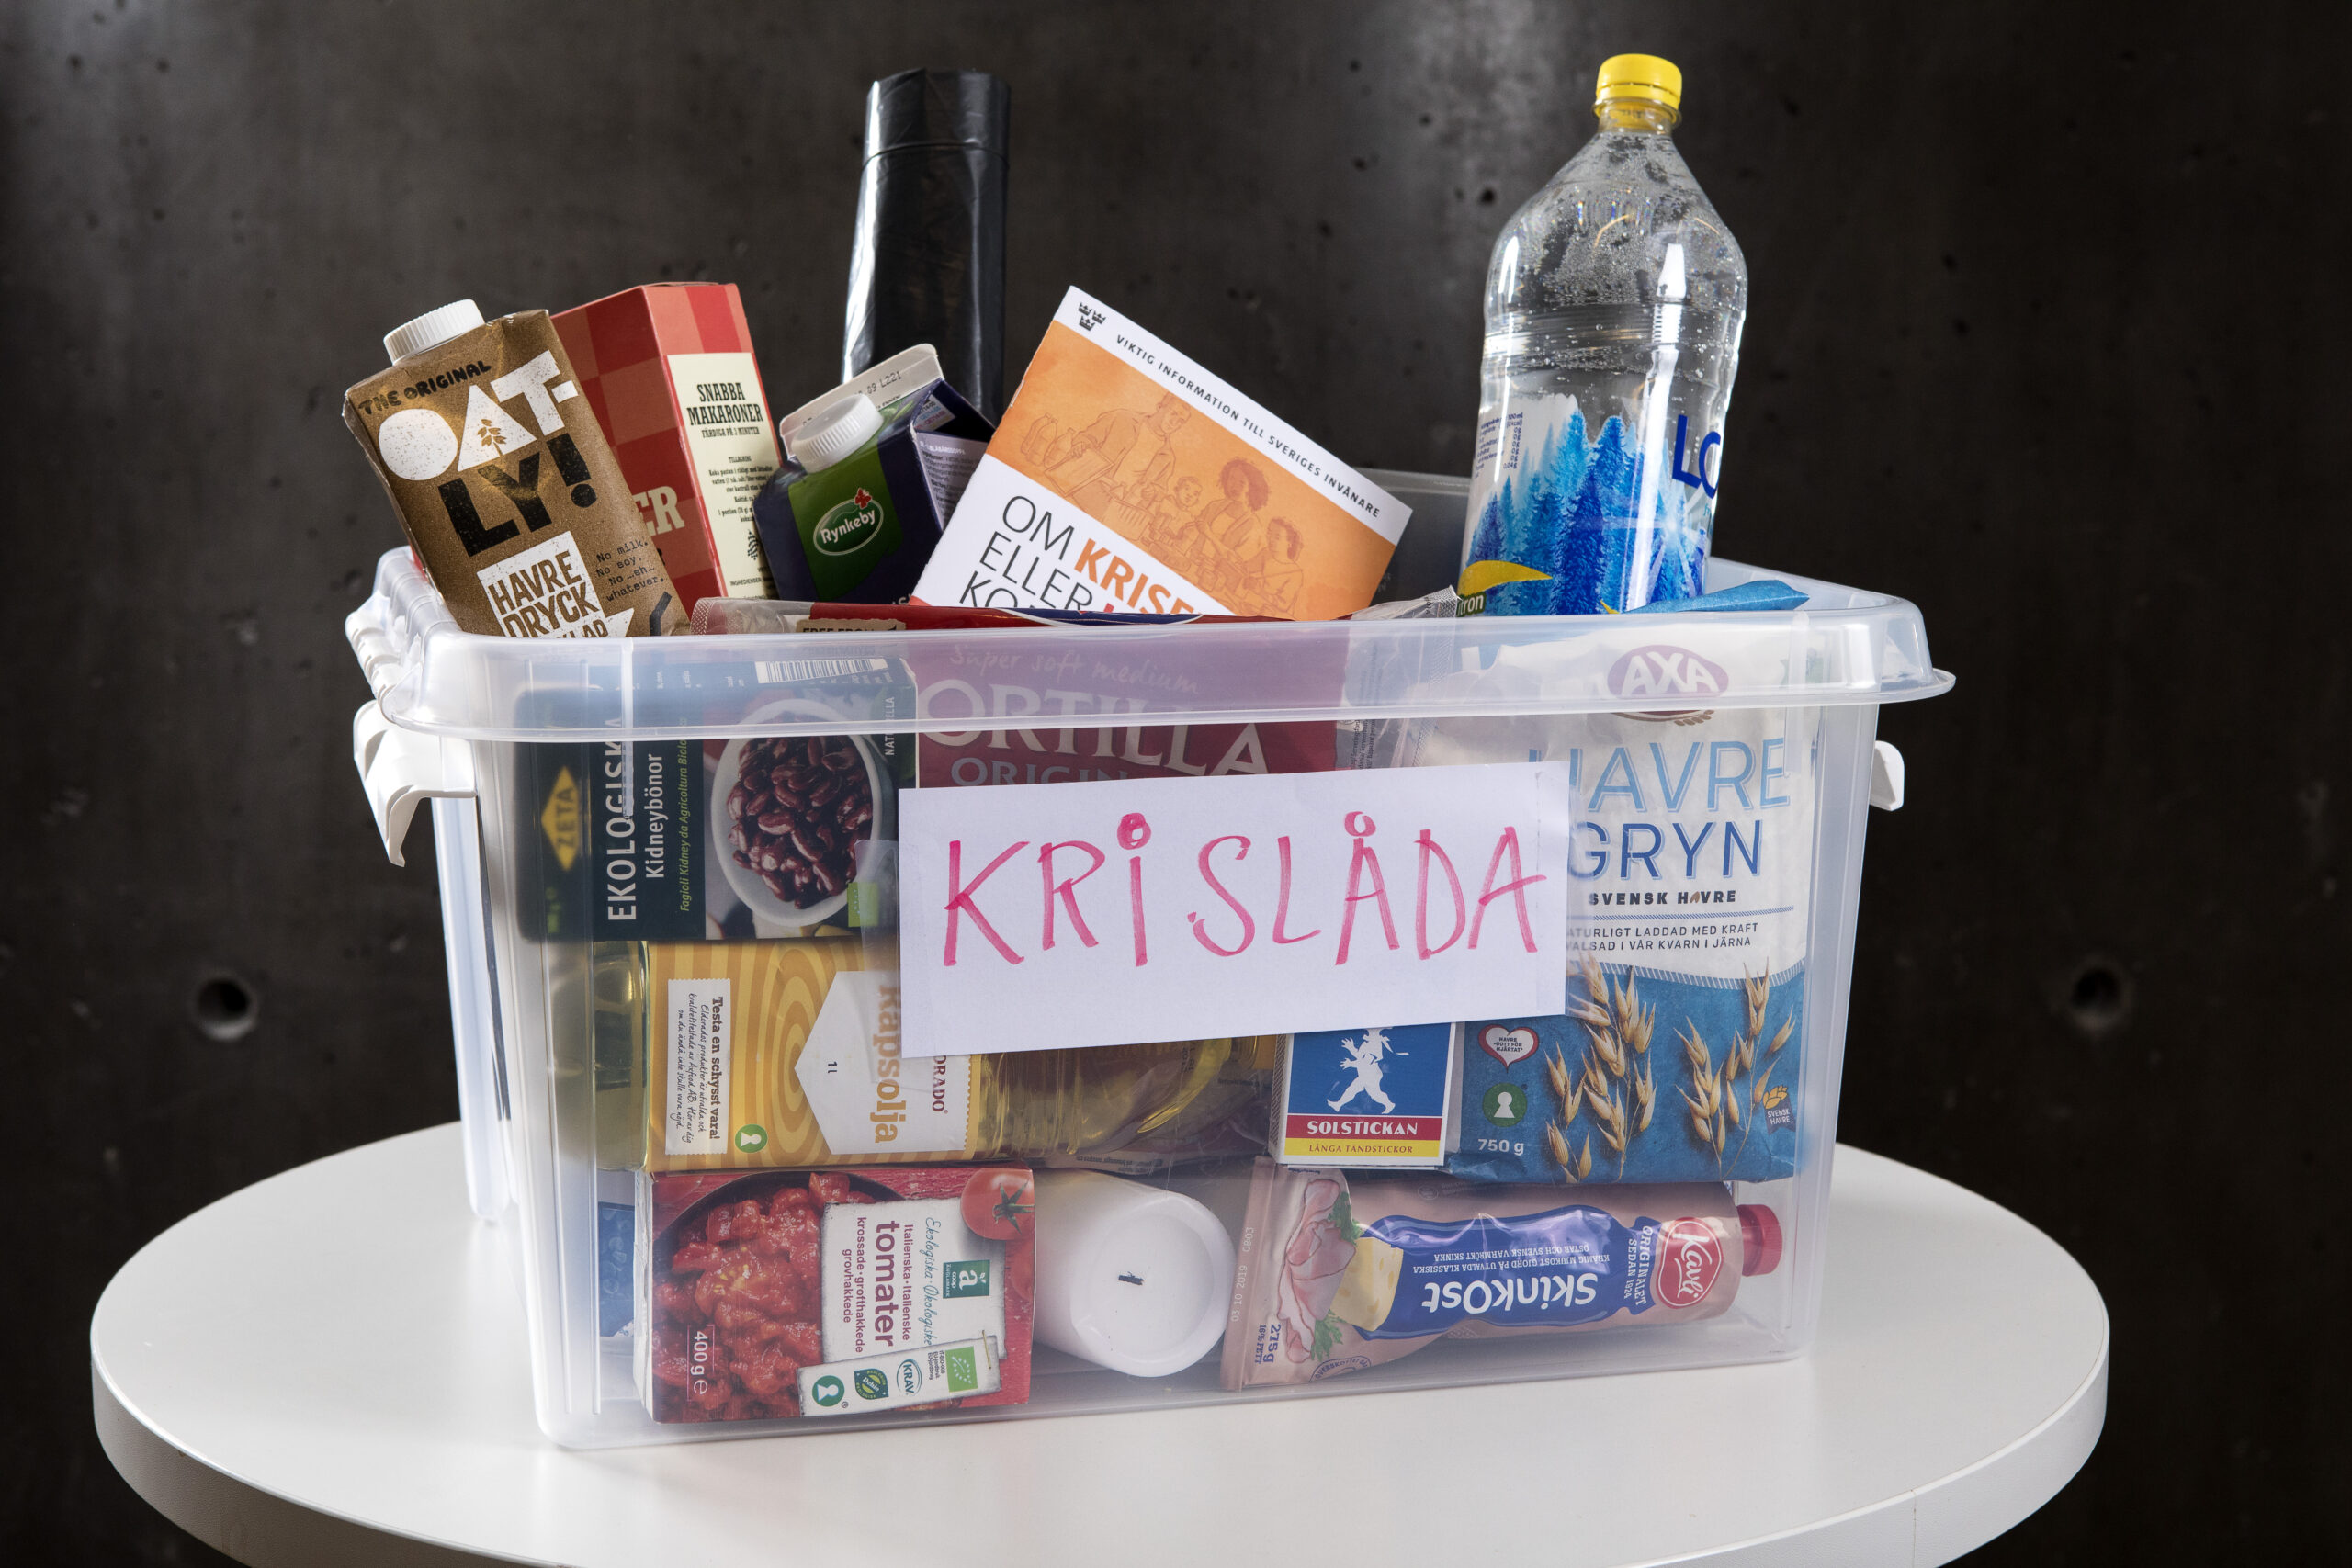 En genomskinlig plastlåda står på ett podium. På en lapp på utsidan av lådan står ordet Krislåda. Lådan är fylld med bra saker att ha hemma vid en kris, till exempel vatten, stearinljus och olika matvaror.